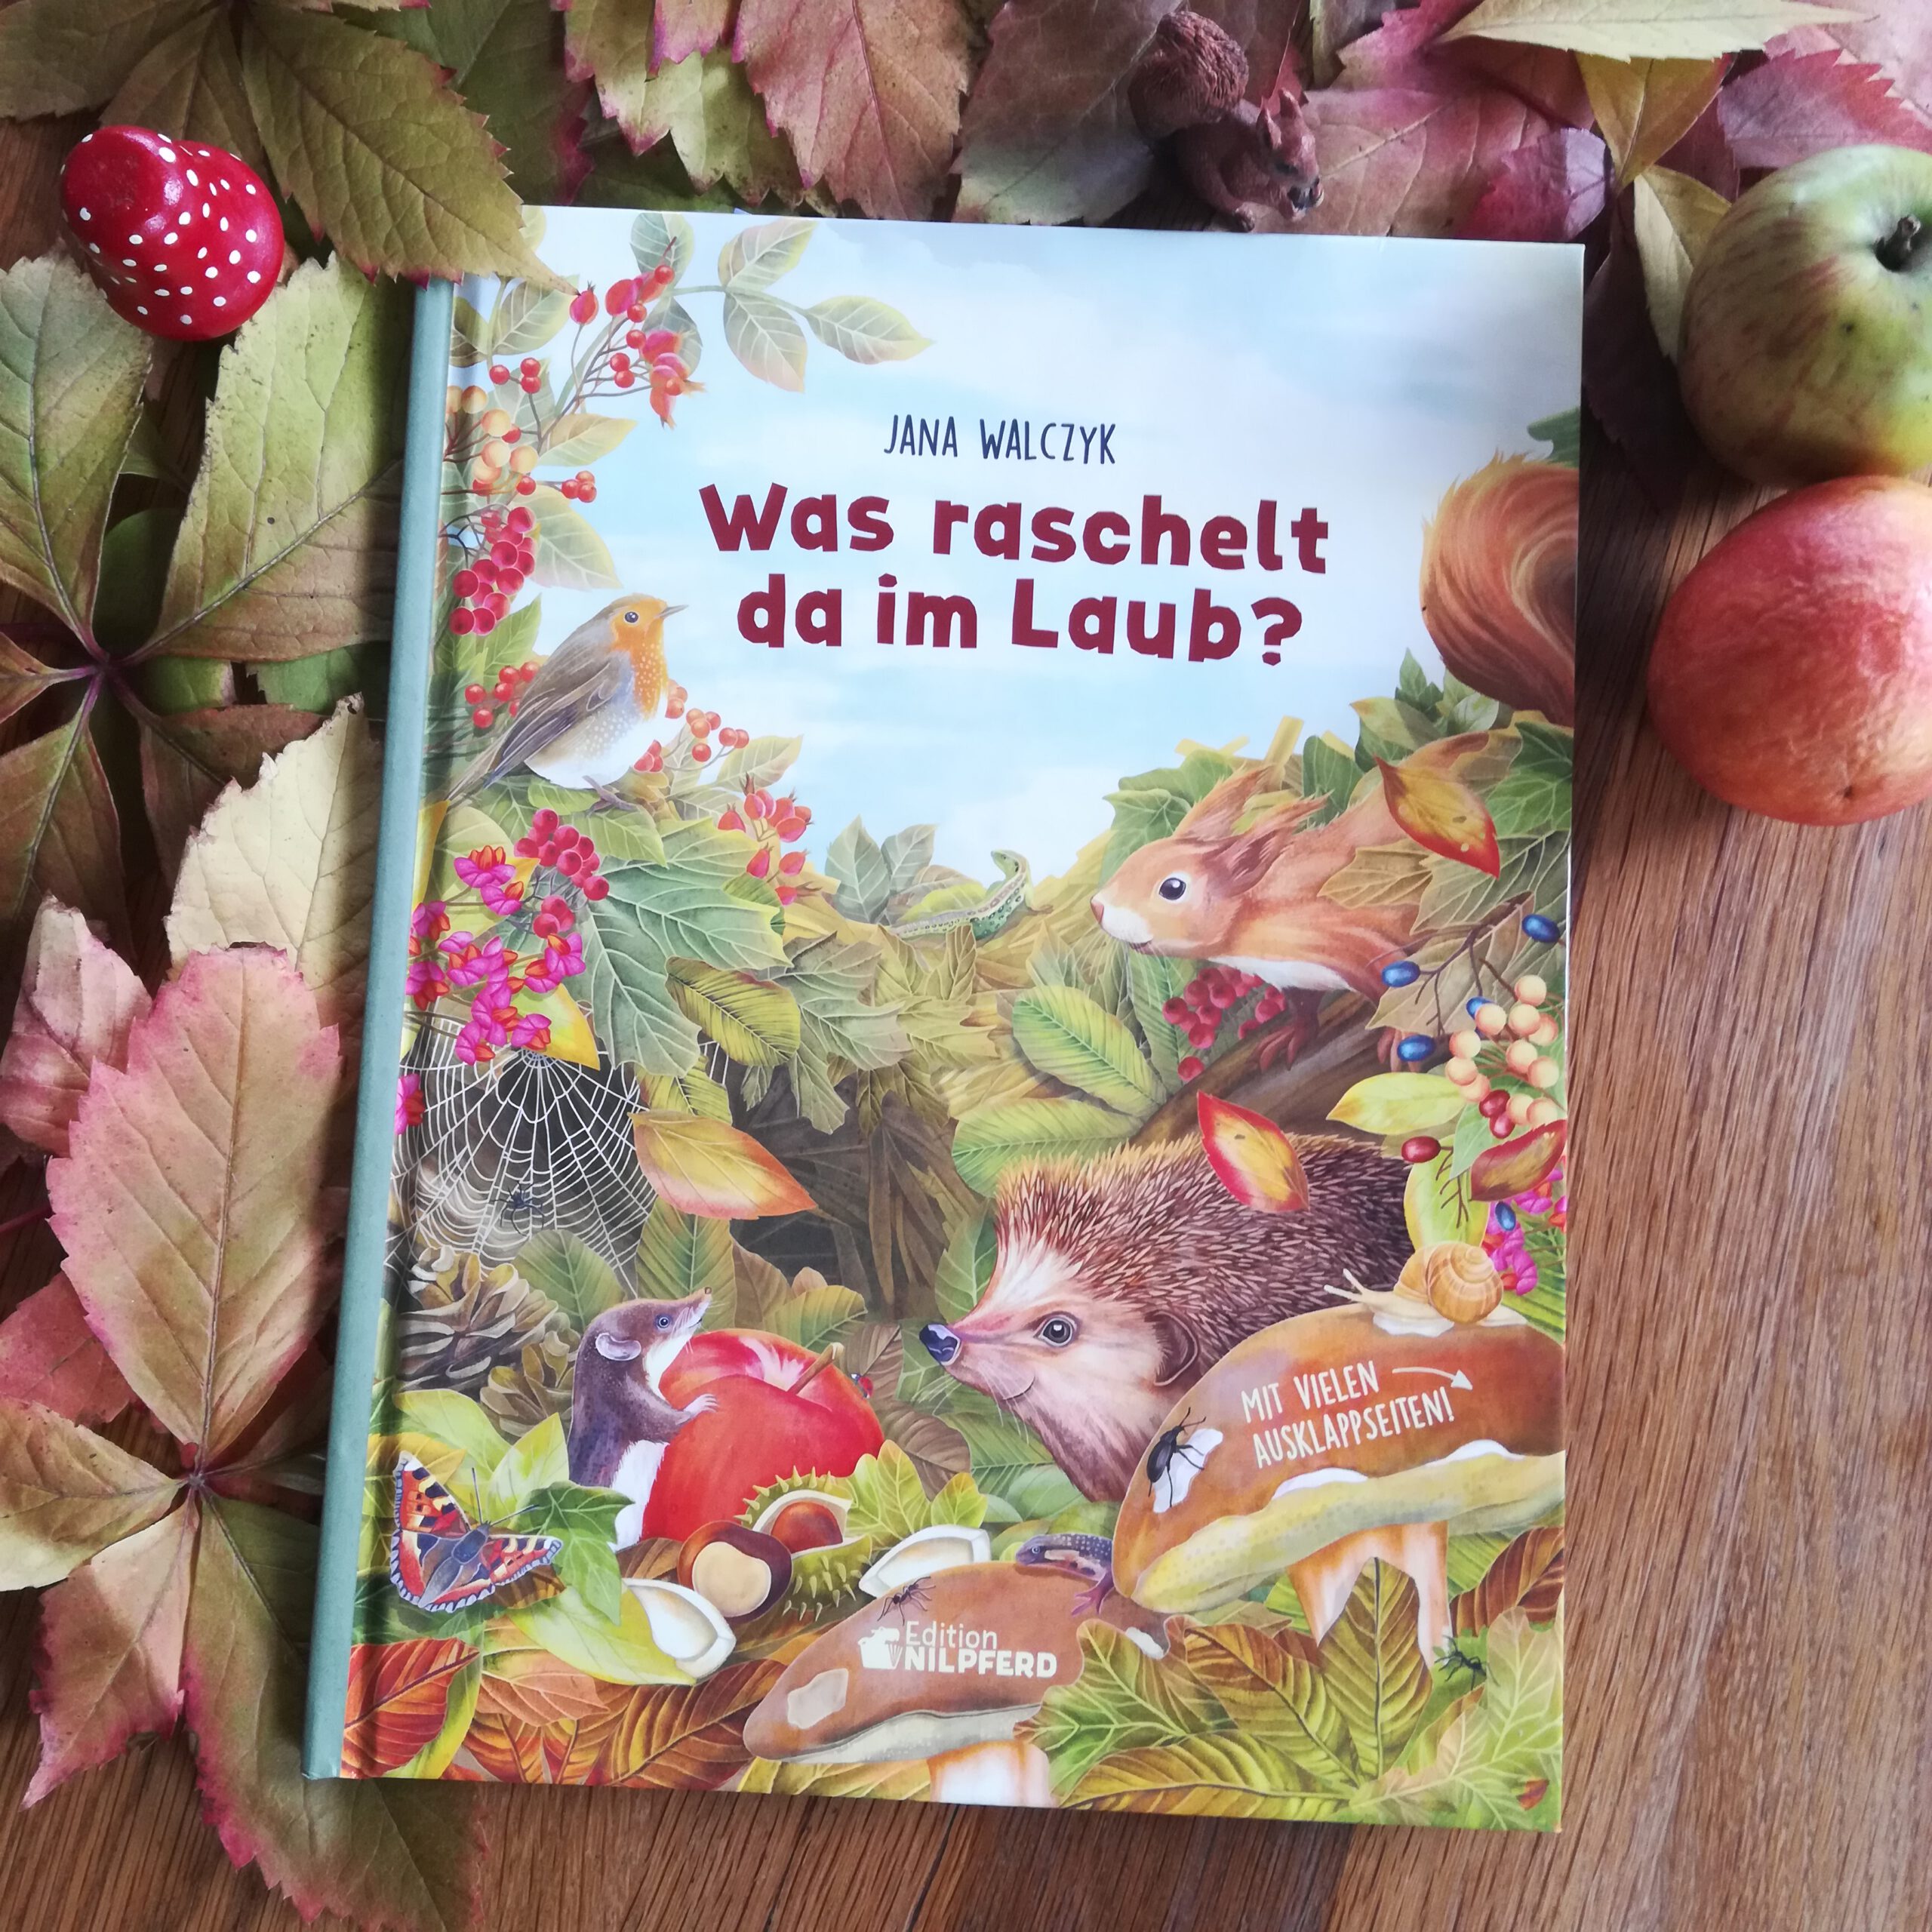 Ein allerschönstes Herbstbuch: „Was raschelt da im Laub?“ – Jana Walczyk